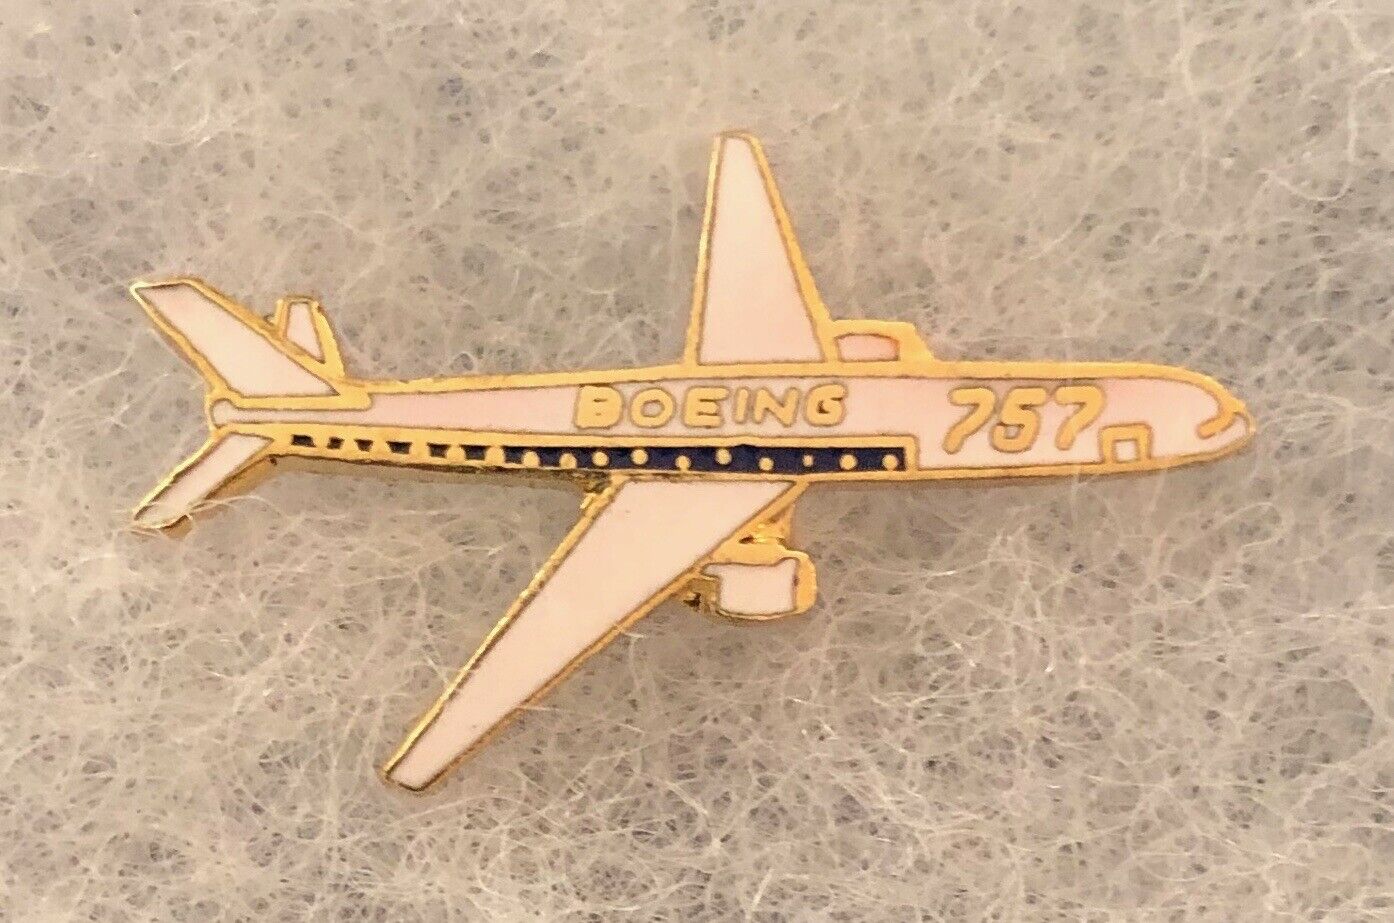 Boeing 757 Lapel Pin